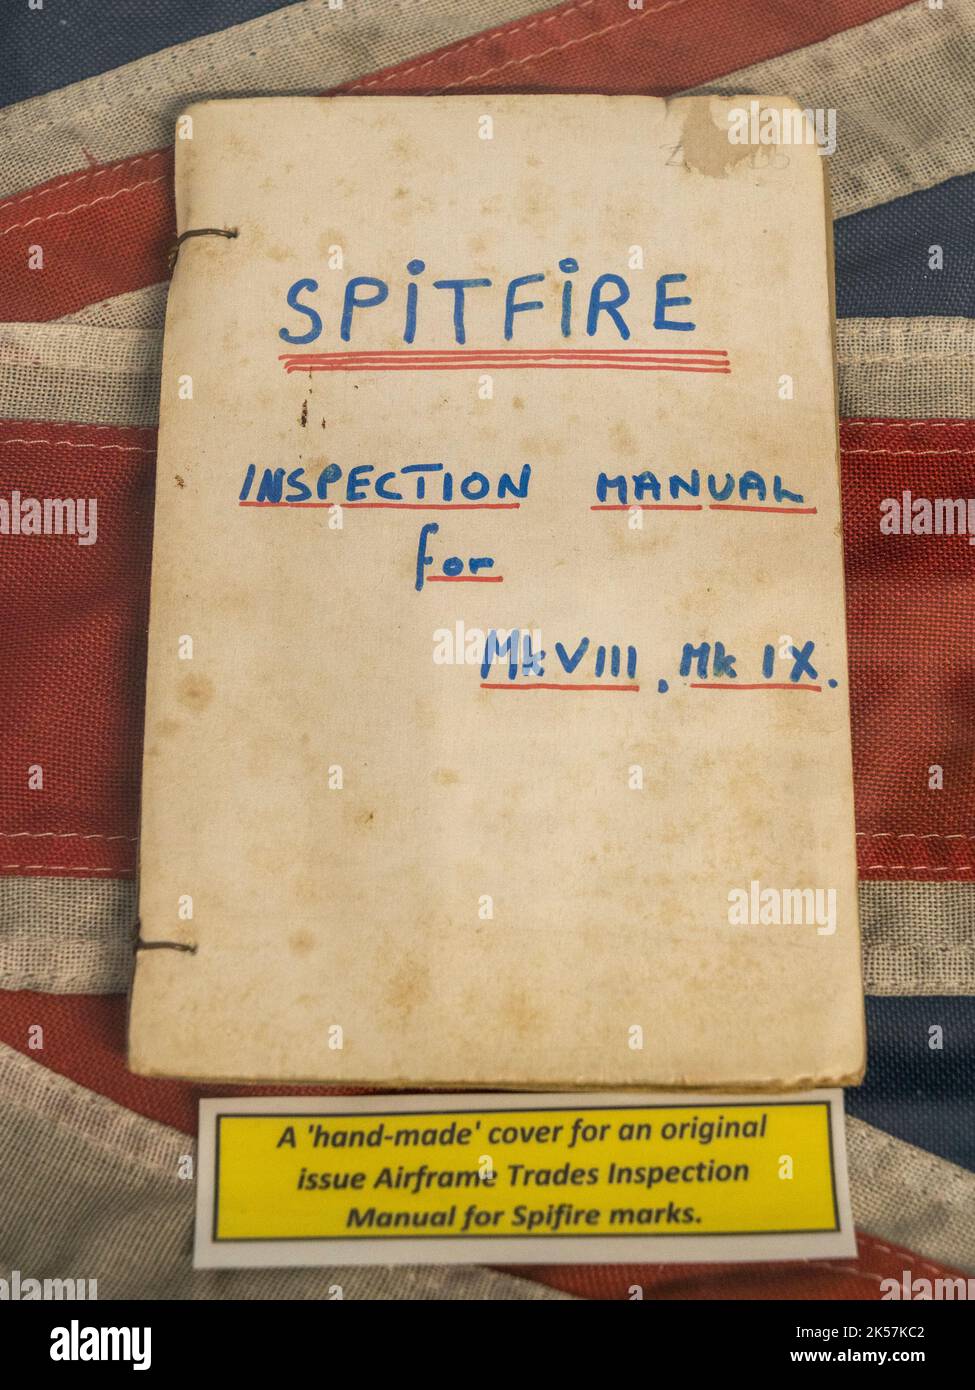 Copertina Hanmade per un manuale originale di ispezione dei mestieri della cellula per il Mk VII & Mk IX Spitfire nel RAF Manston History Museum, Ramsgate, Kent, UK. Foto Stock